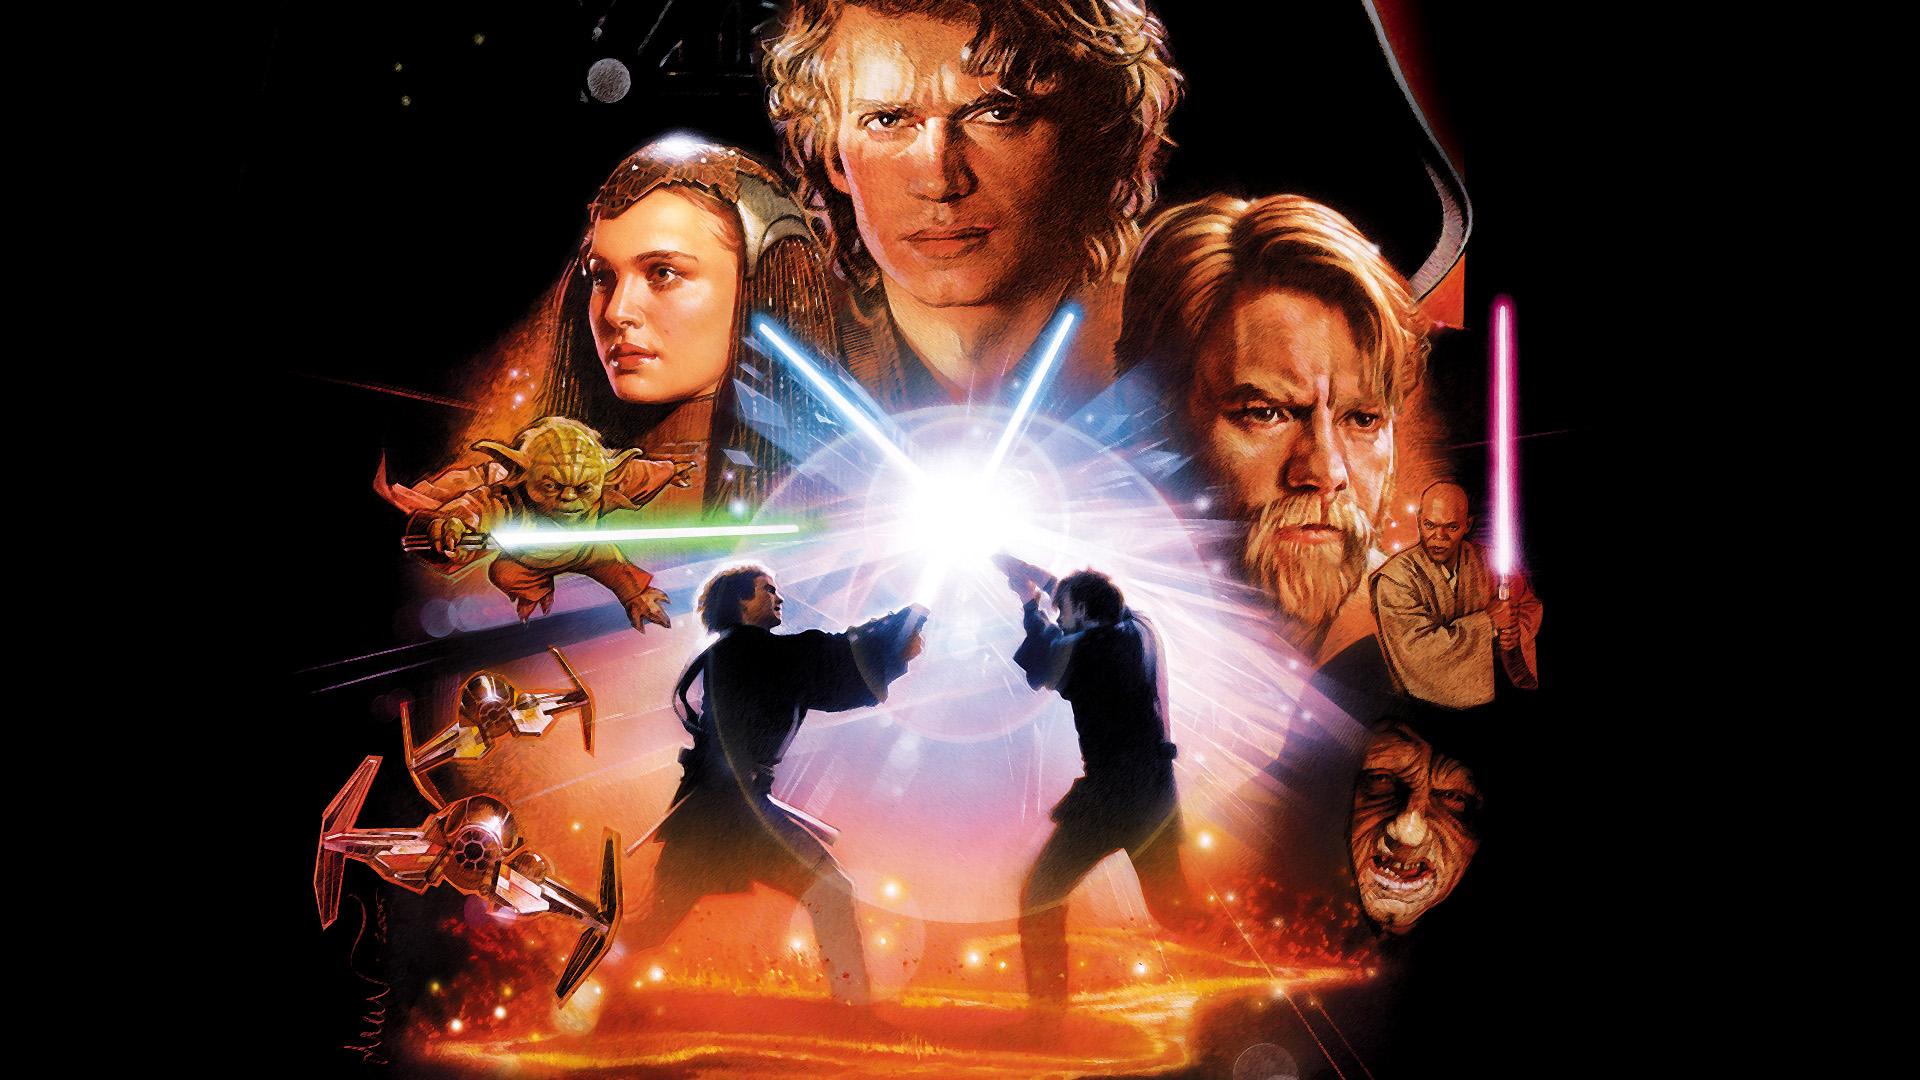 Star Wars Episode III Wallpaper Wallpapers